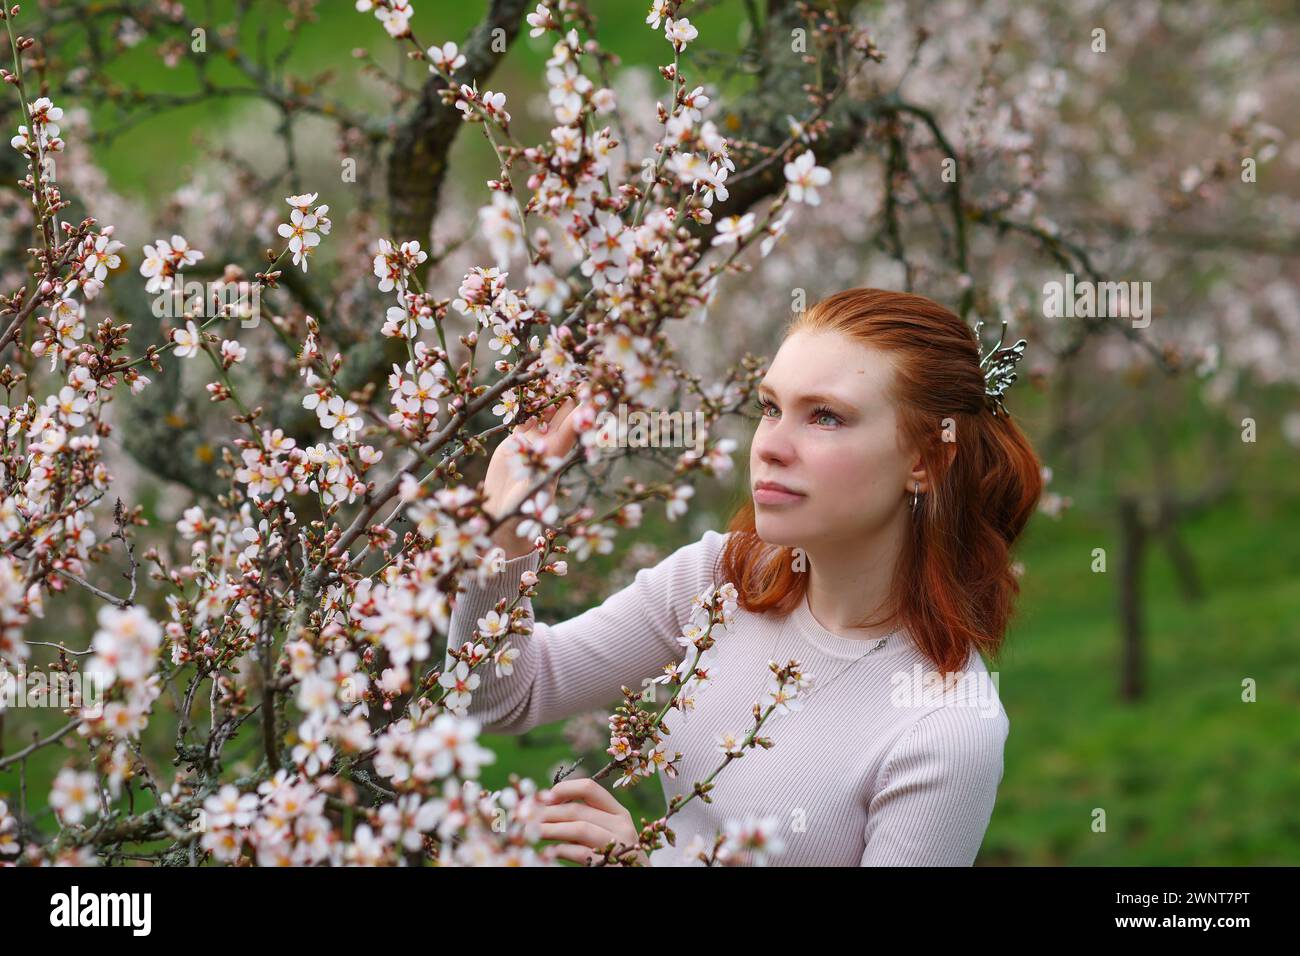 Frühling wunderschönes, romantisches rothaariges Mädchen, das im blühenden Garten steht. Stockfoto